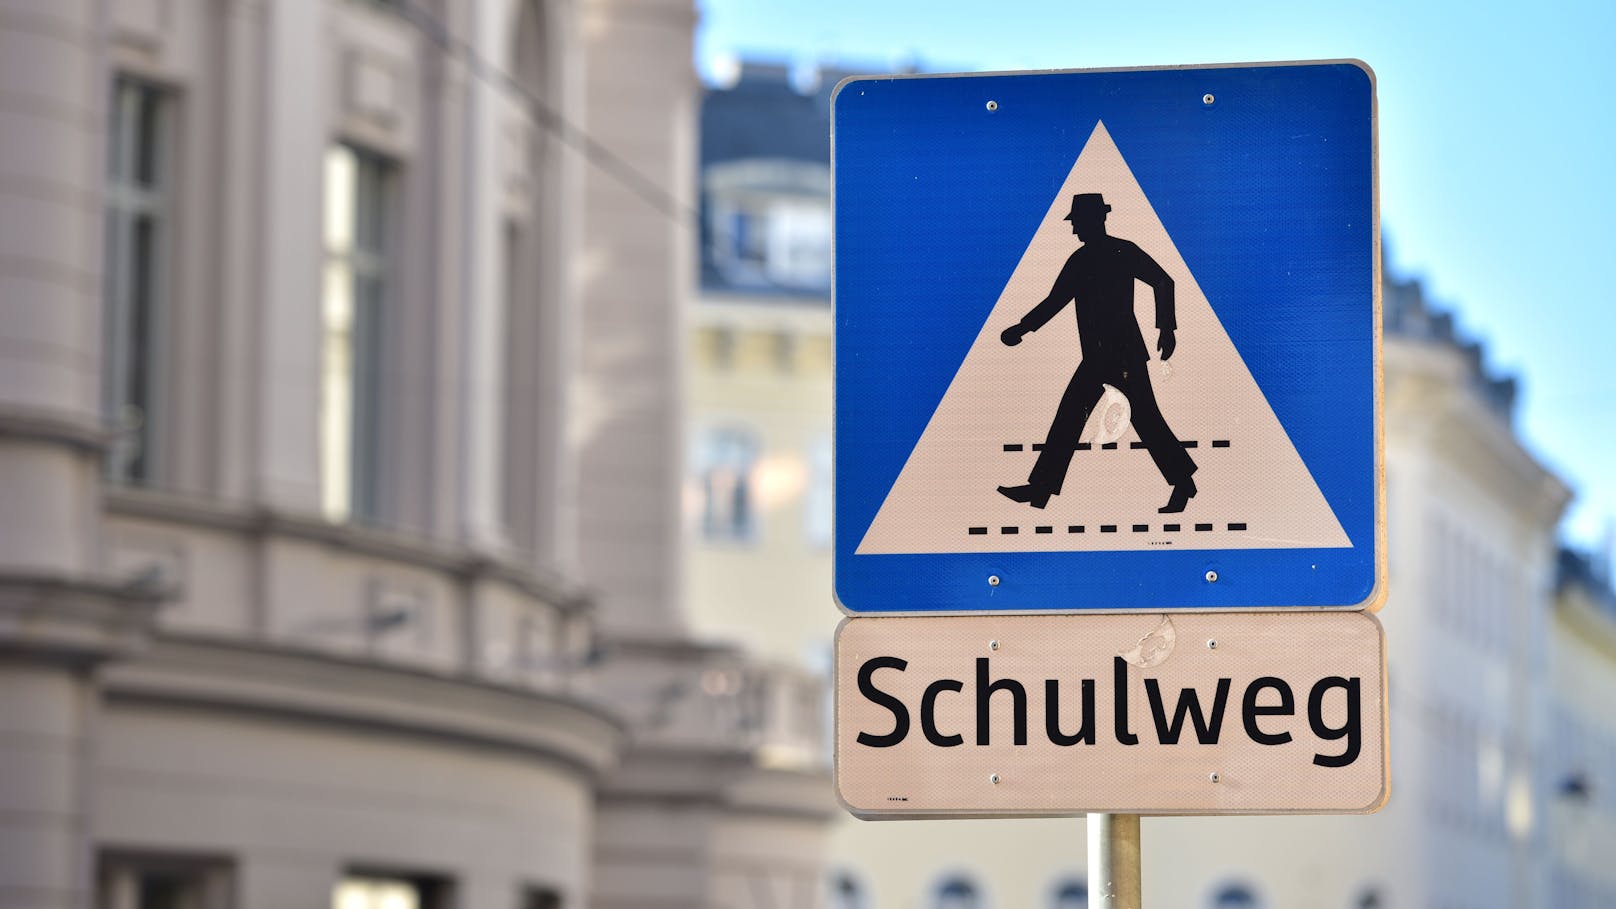 In Wien gab es vermehrt Warnungen vor Kindesentführungen im Umfeld von Schulen.